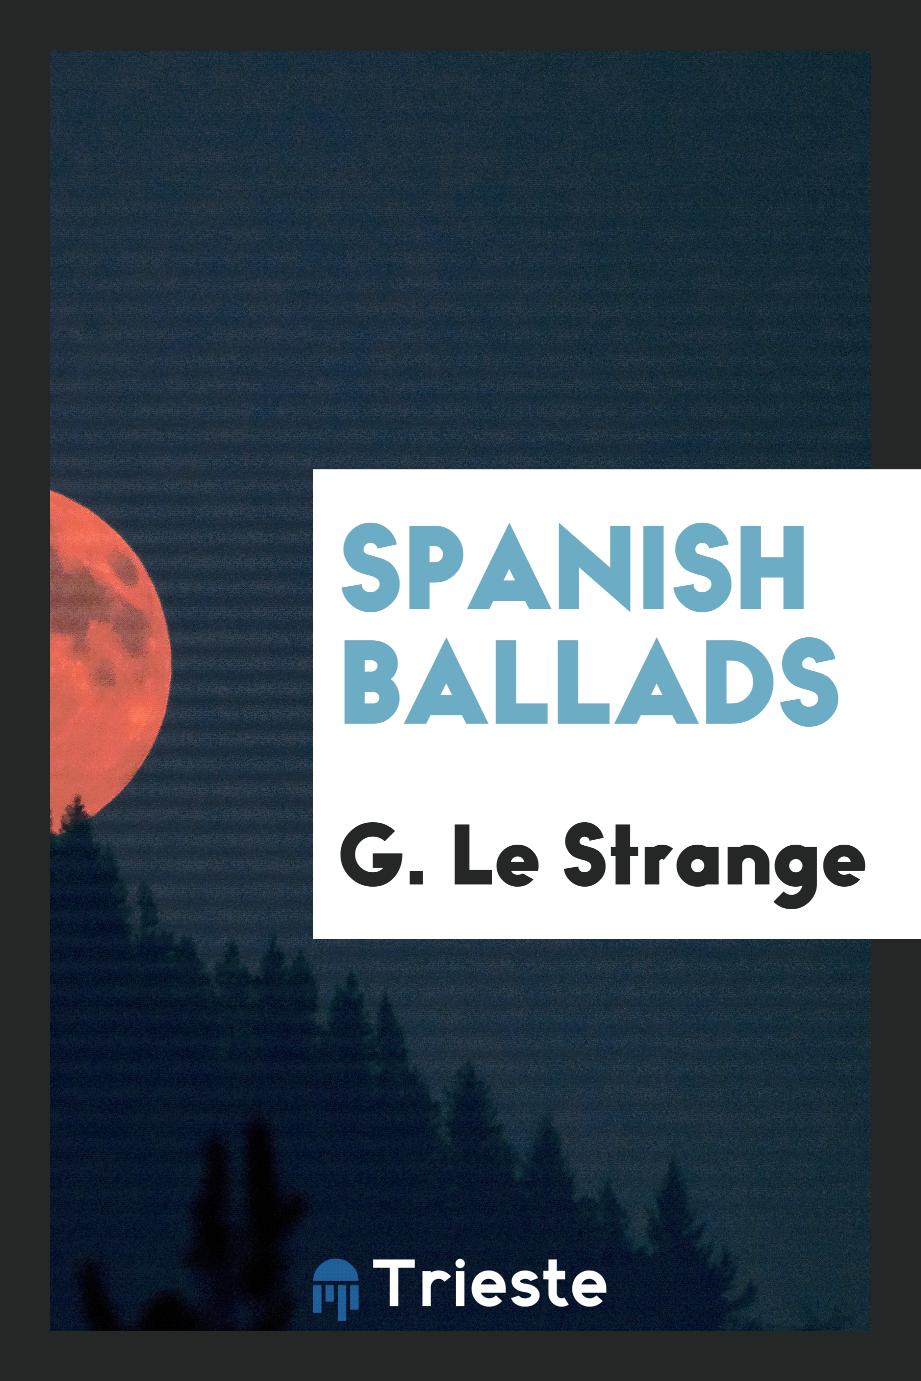 Spanish ballads